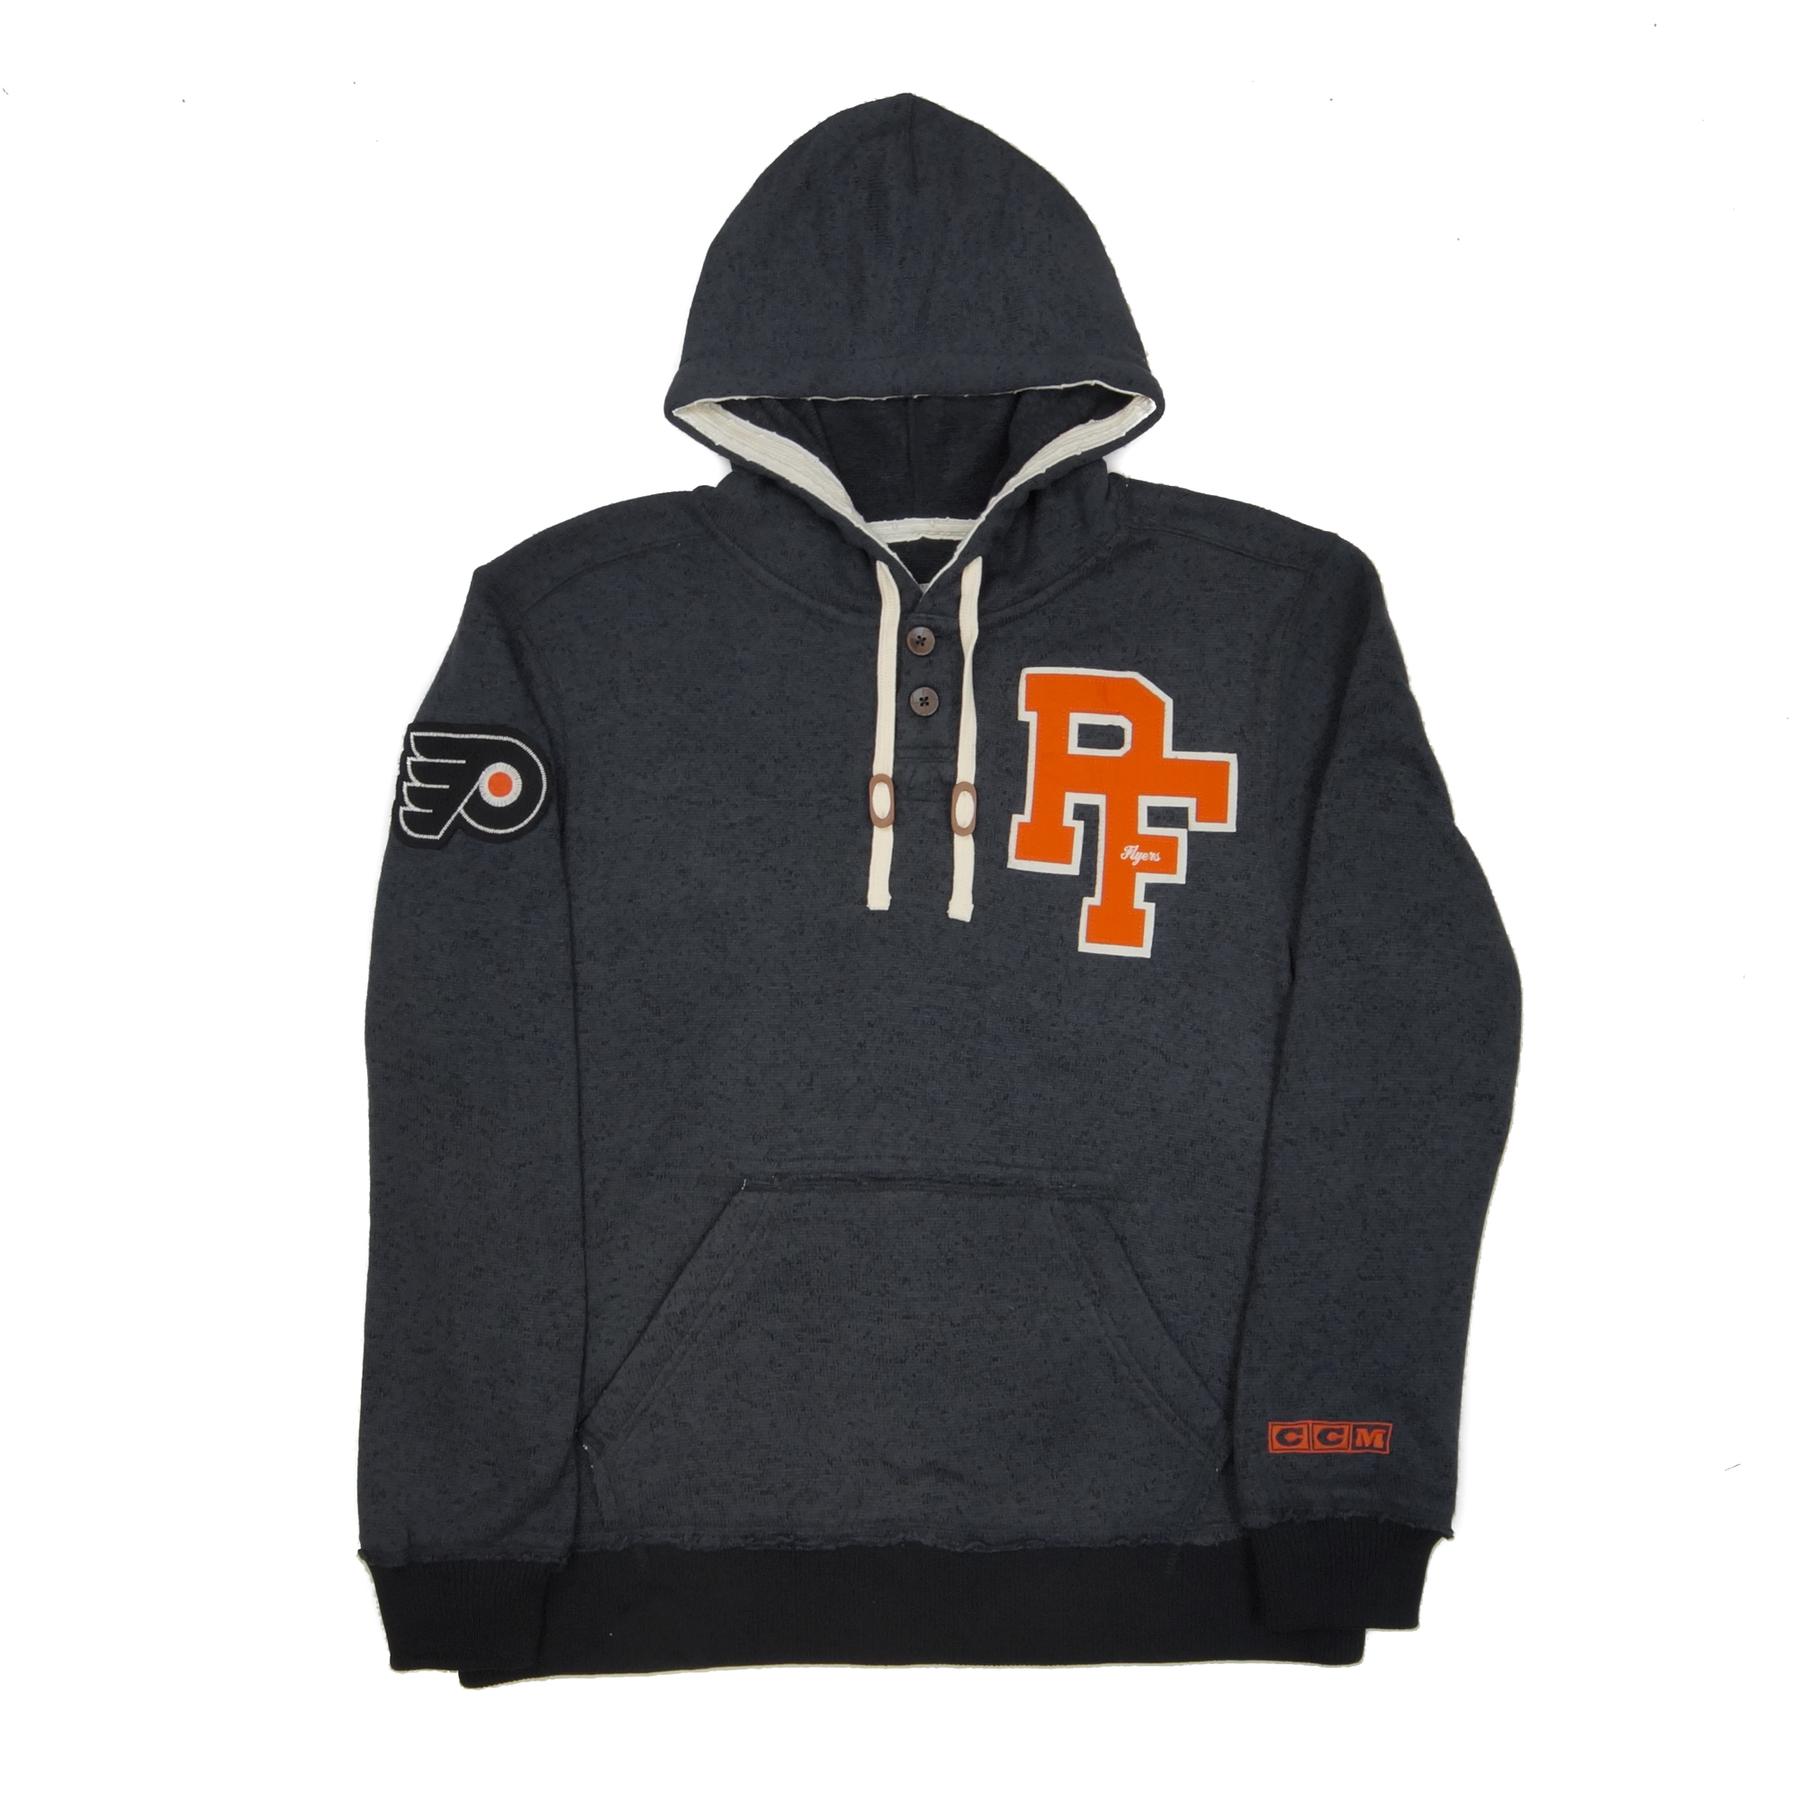 Philadelphia Flyers CCM Reebok Grey Sweater Knit Fleece Hoodie Large | eBay